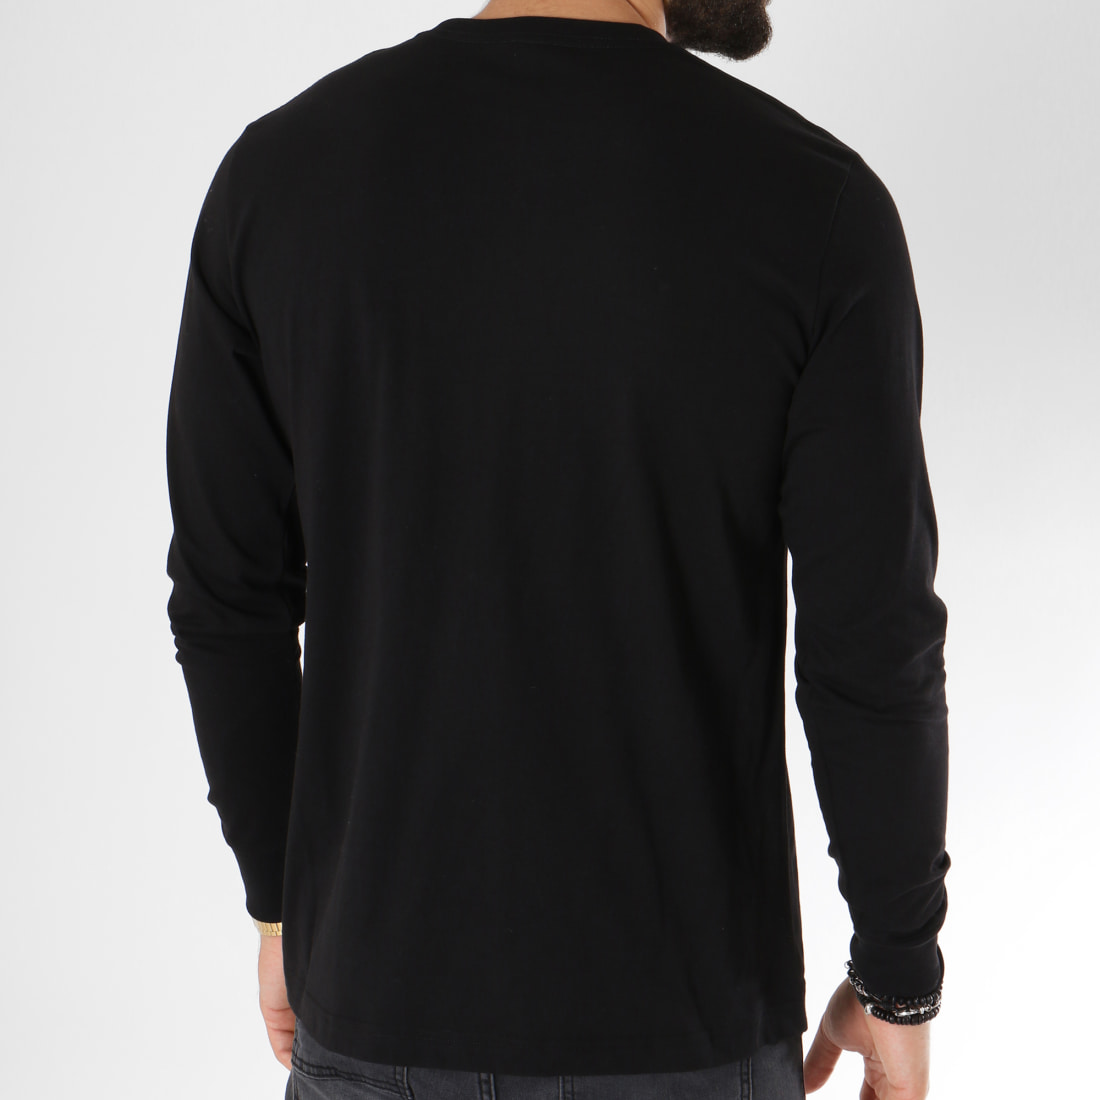 T-shirt noir manches longues homme - DistriCenter